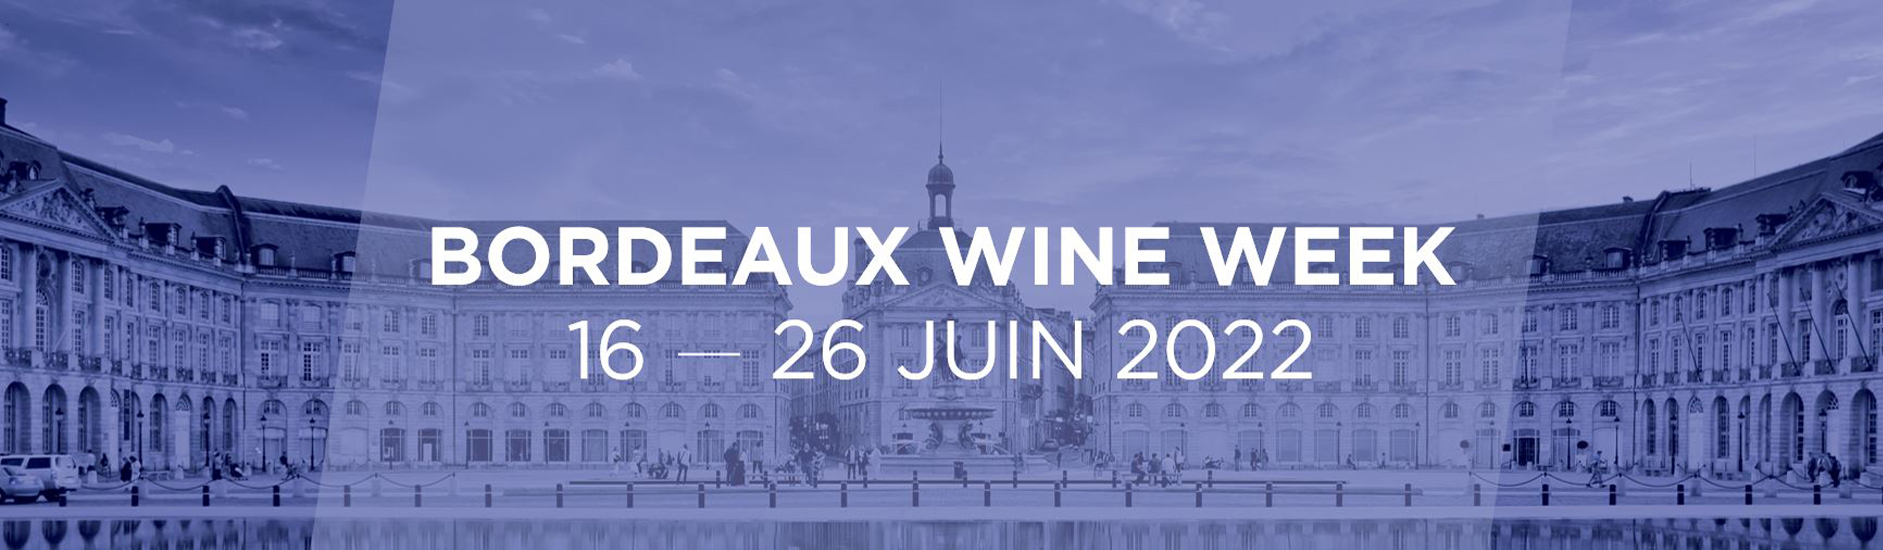 Bordeaux Wine Week juin 2022 place de la bourse